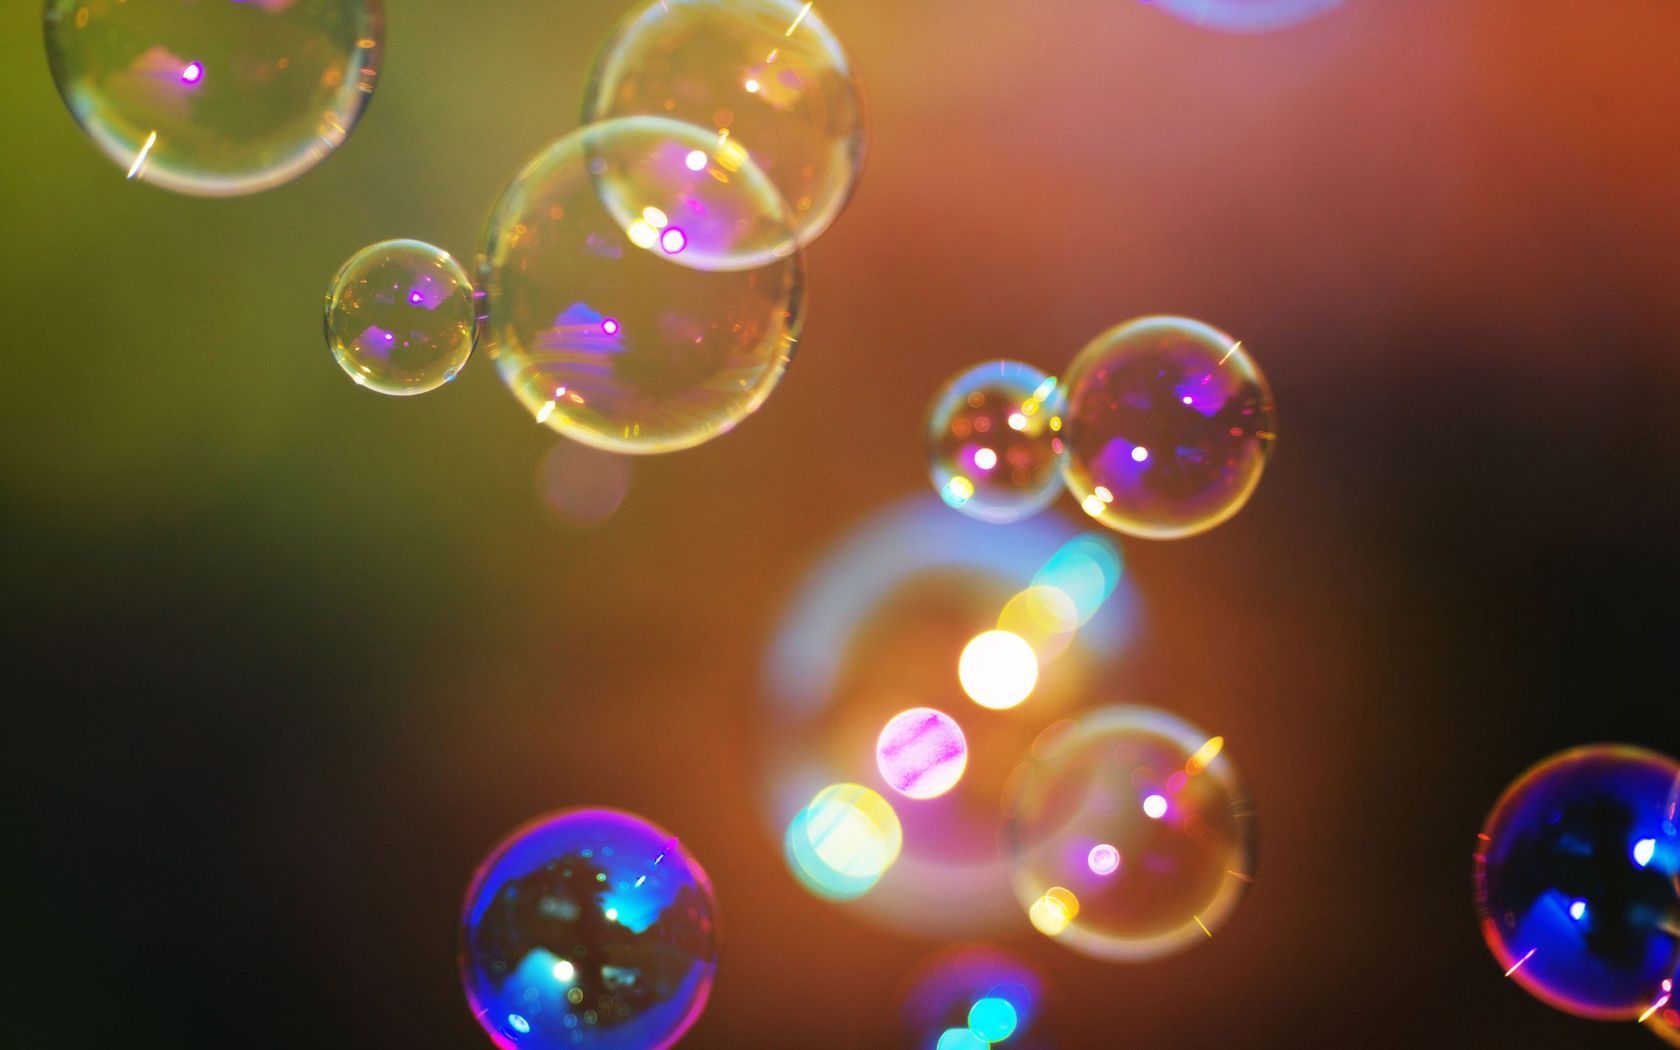 Colorful Bubble Photography Wallpaper Desktop Background. Bubbles